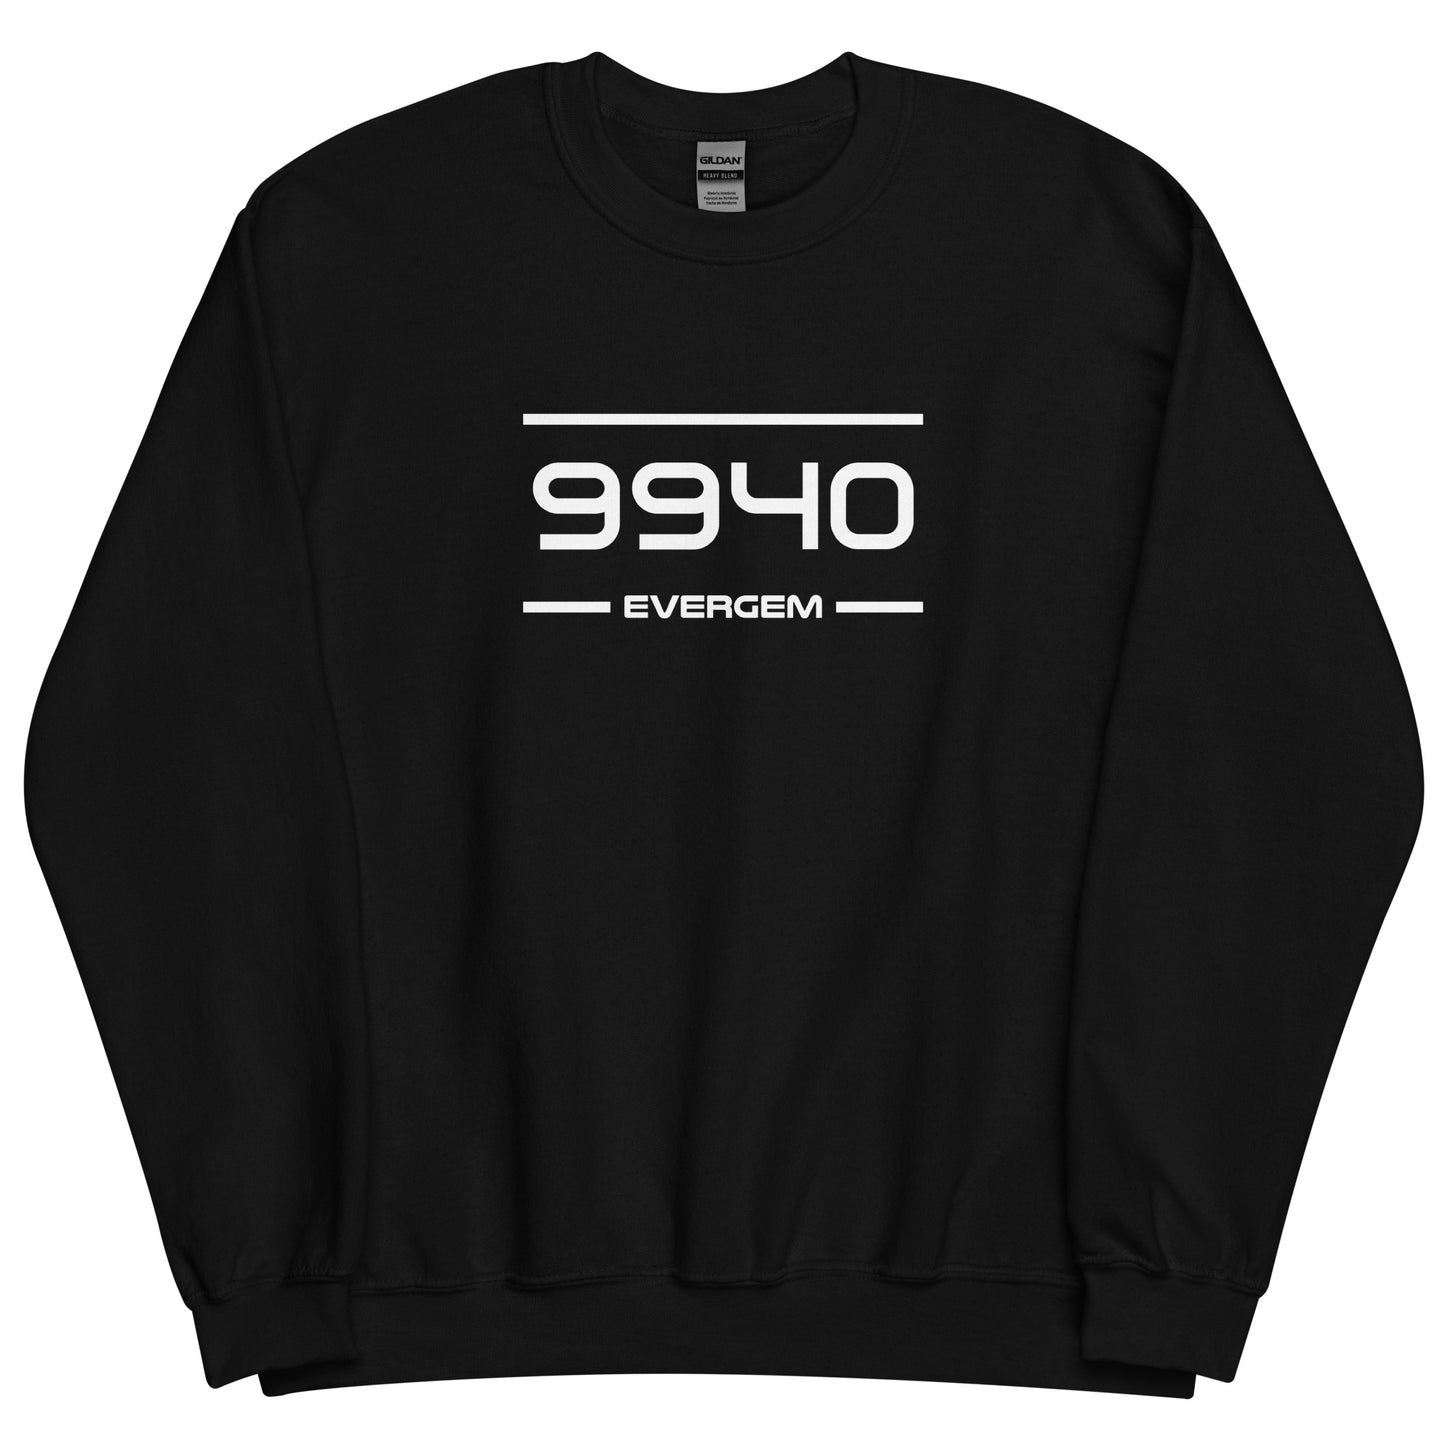 Sweater - 9940 - Evergem (M/V)